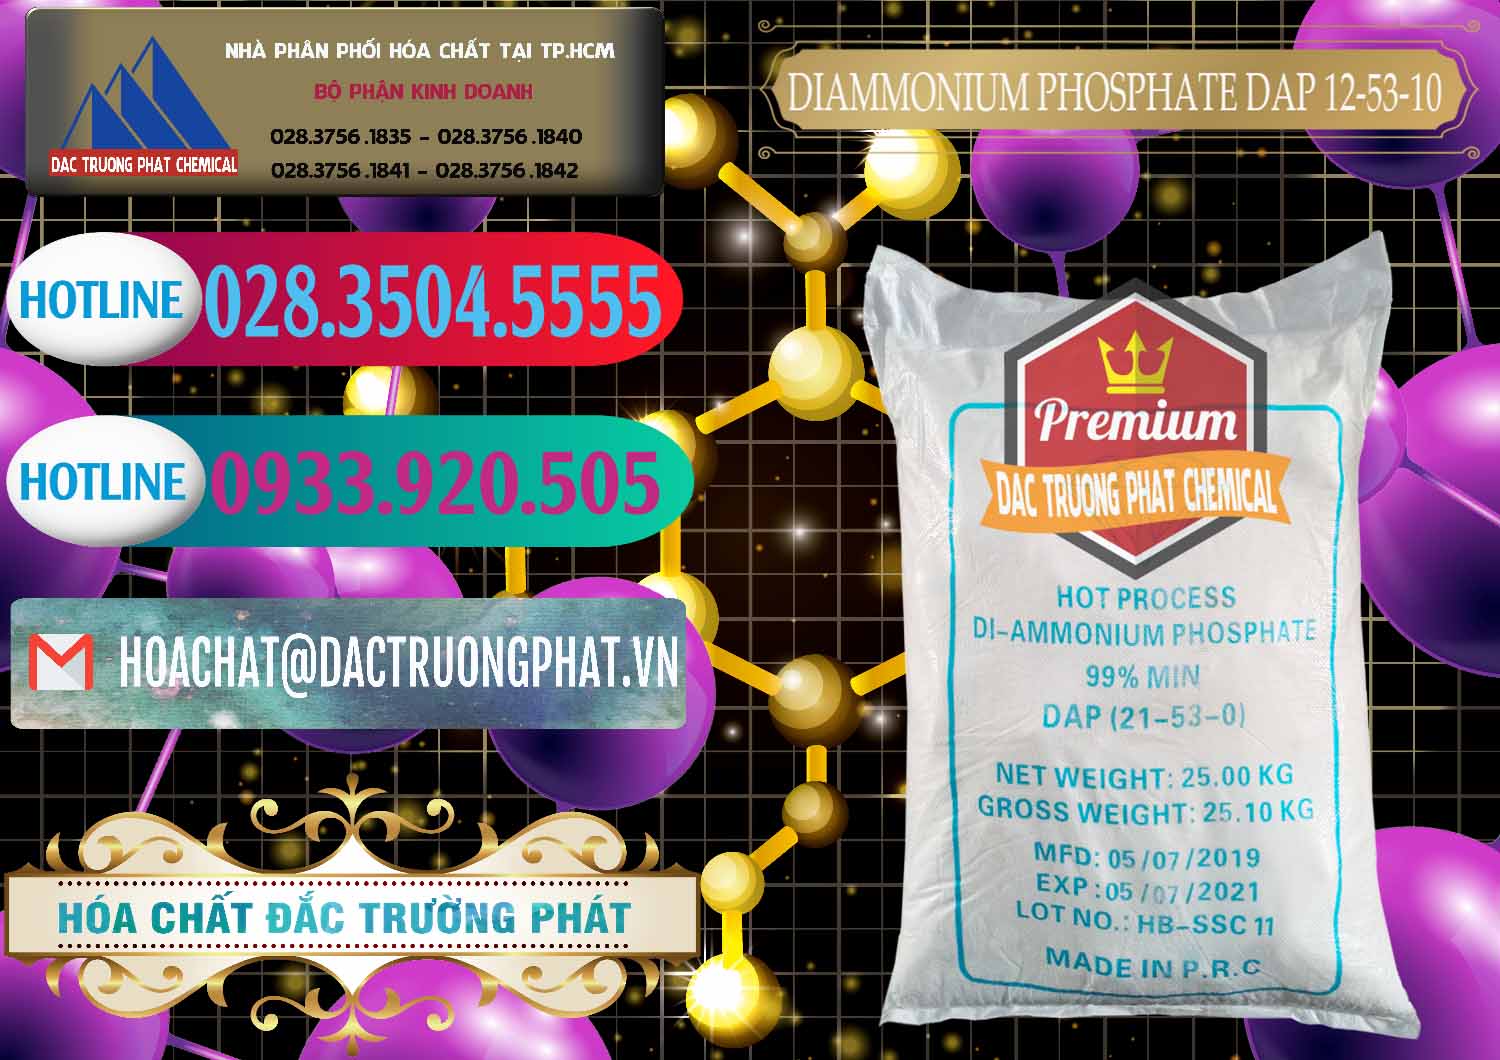 Chuyên bán và phân phối DAP - Diammonium Phosphate Trung Quốc China - 0319 - Đơn vị phân phối và cung cấp hóa chất tại TP.HCM - truongphat.vn